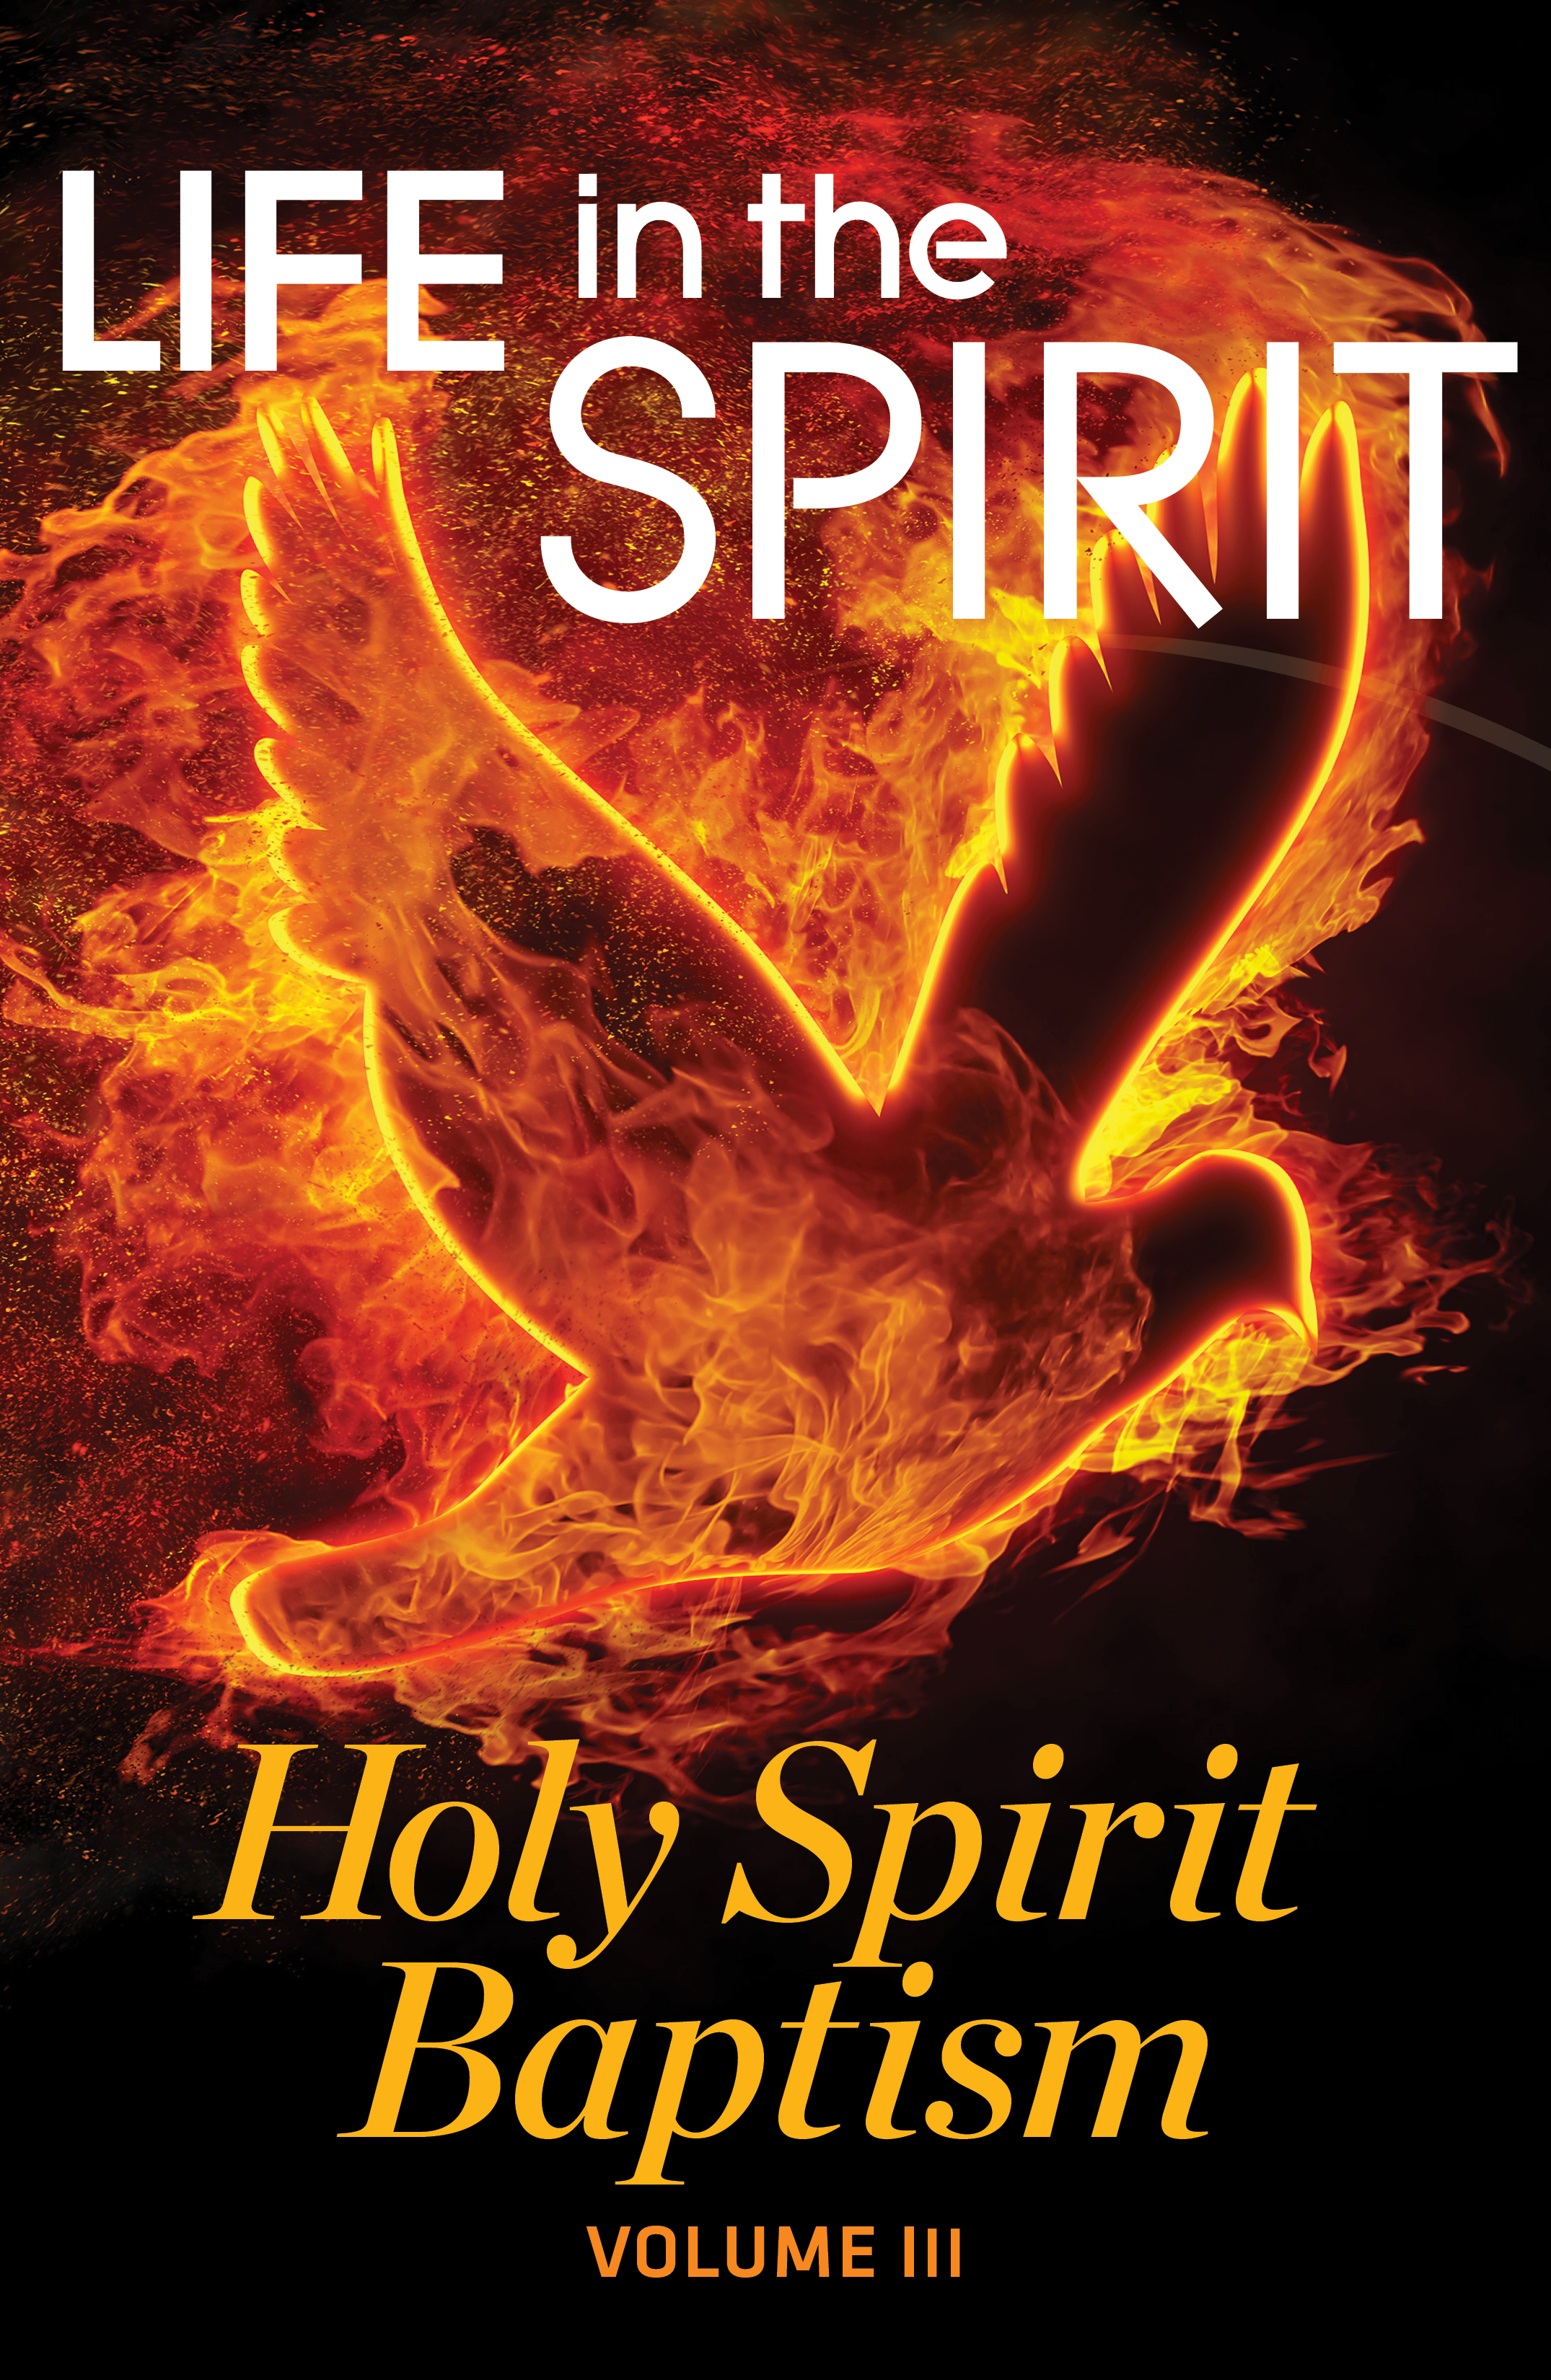 Babtism Holy Spirit Fire